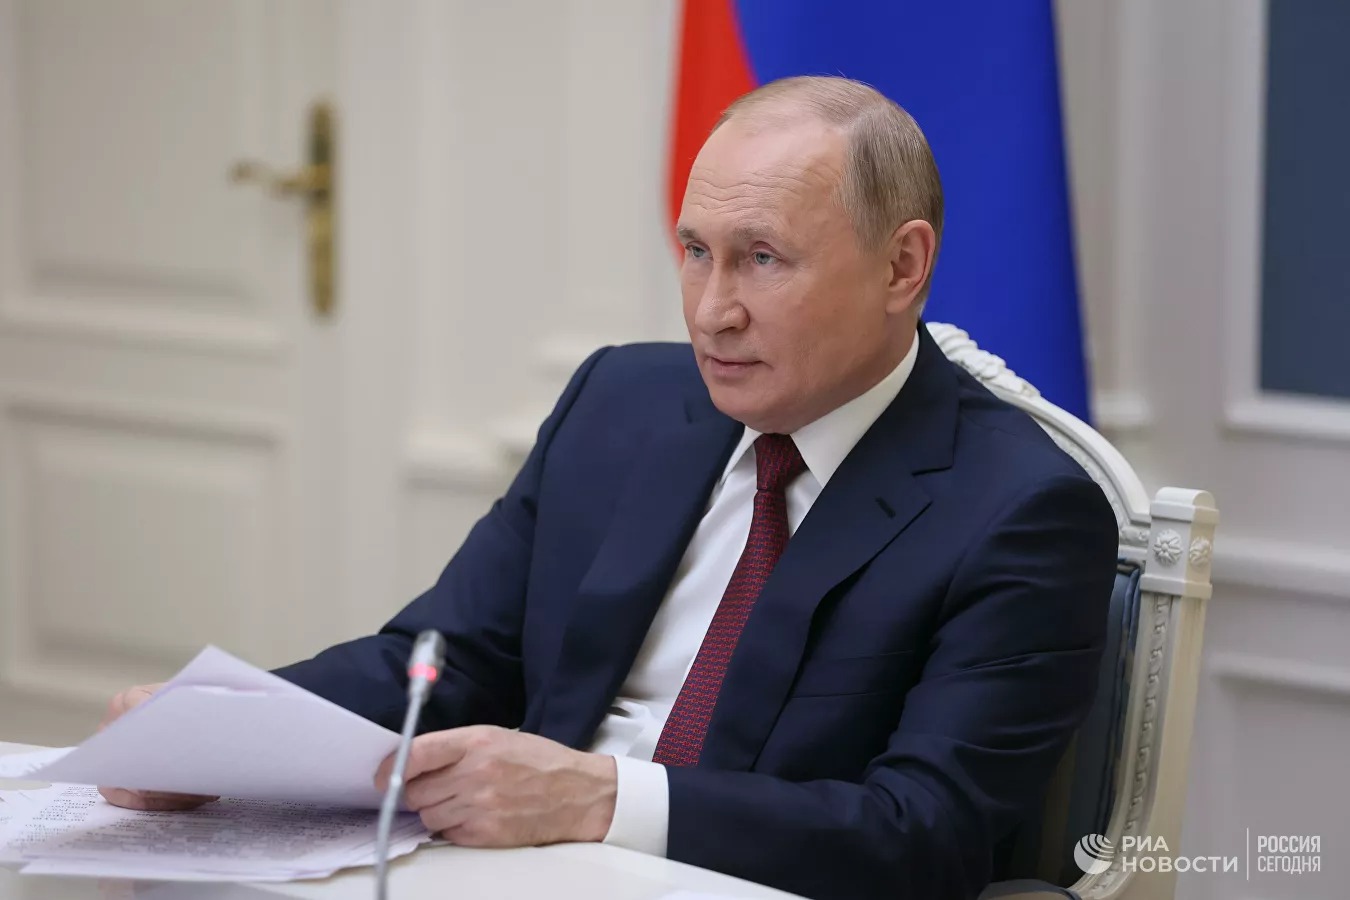 Β.Πούτιν: «Η ρωσική οικονομία ”αντέχει με αξιοπρέπεια” στις κυρώσεις της Δύσης»